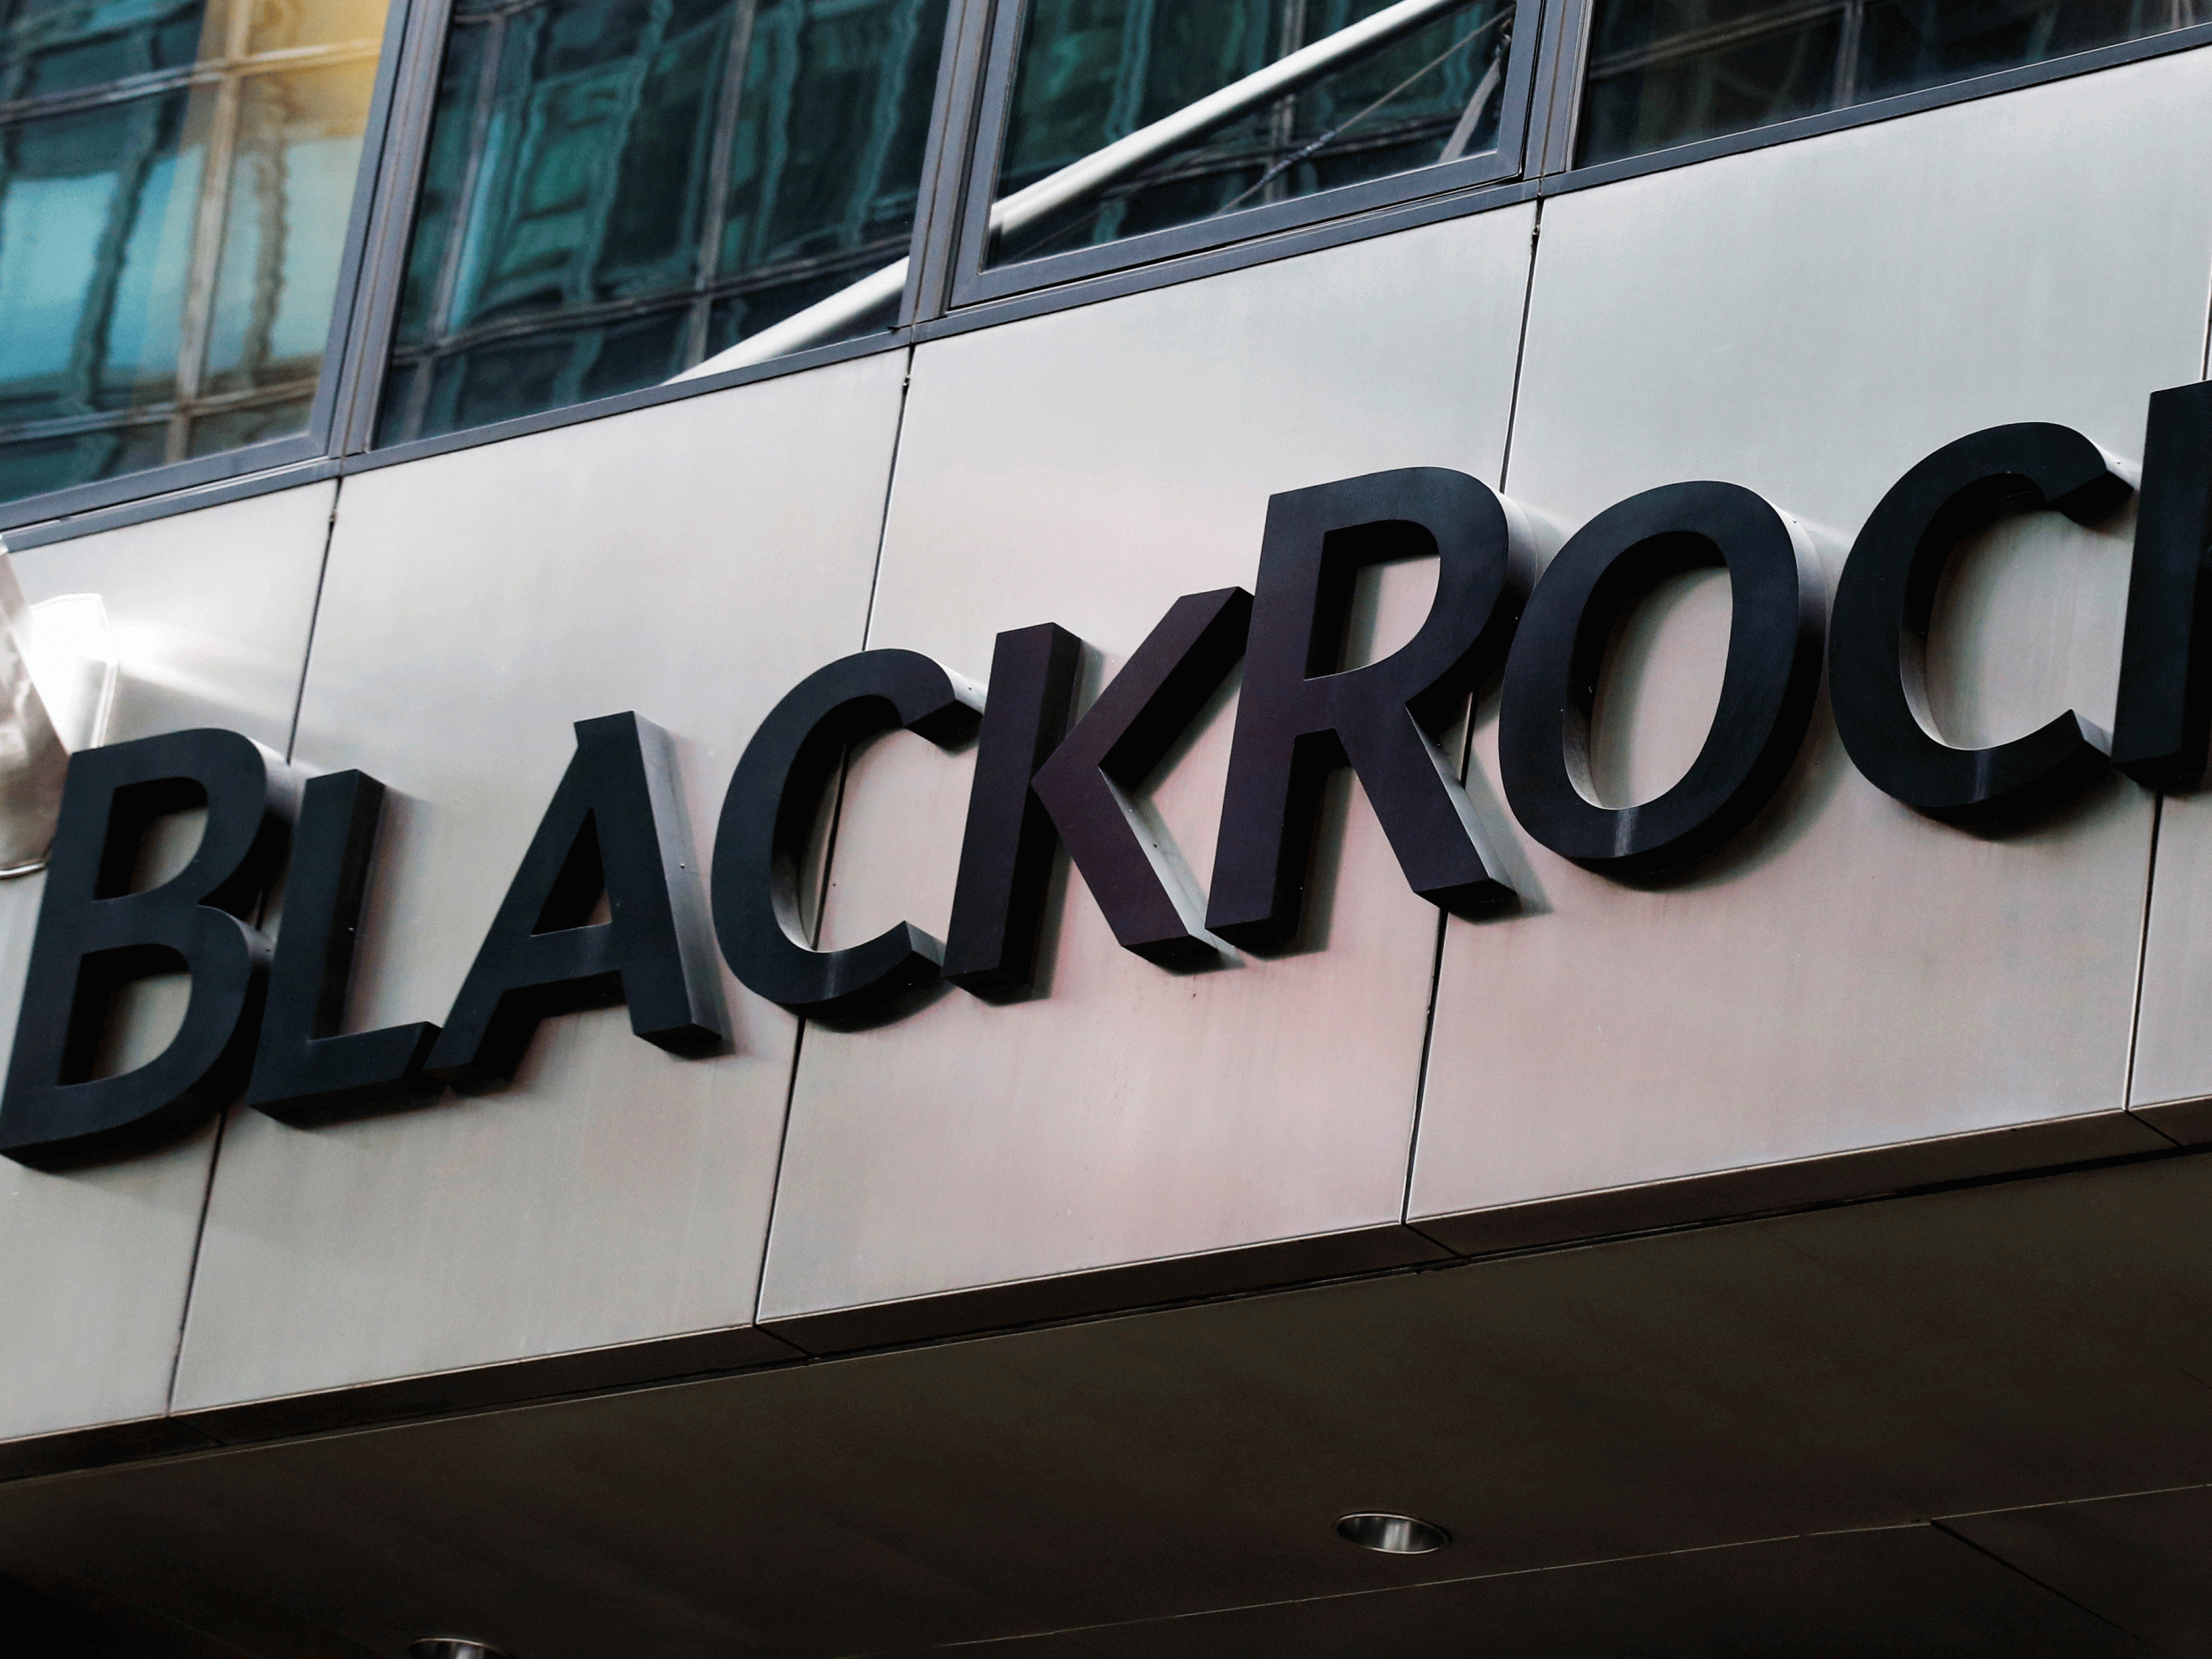 BlackRock has around $5.4 trillion in assets under management